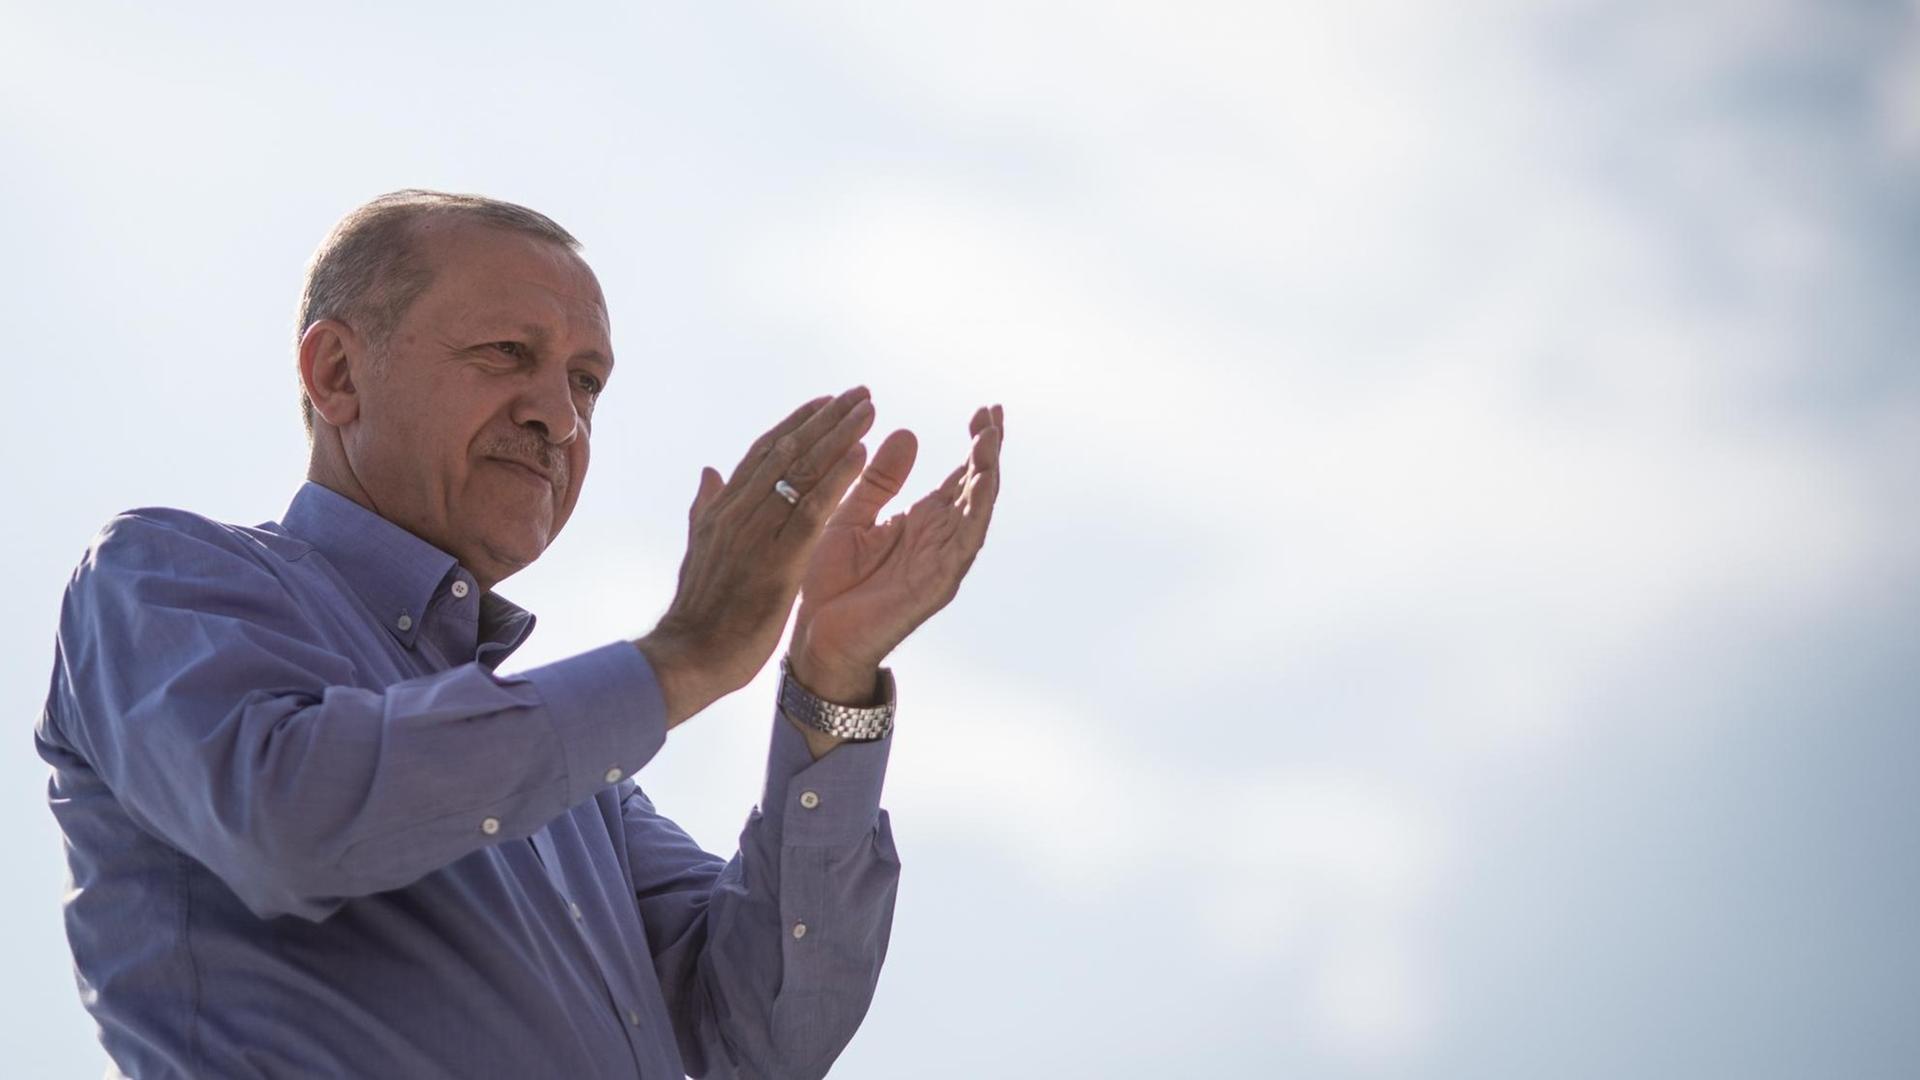 Der türkische Präsident Erdogan in blauen Hemd klatschend vor blau-weißem Himmel.